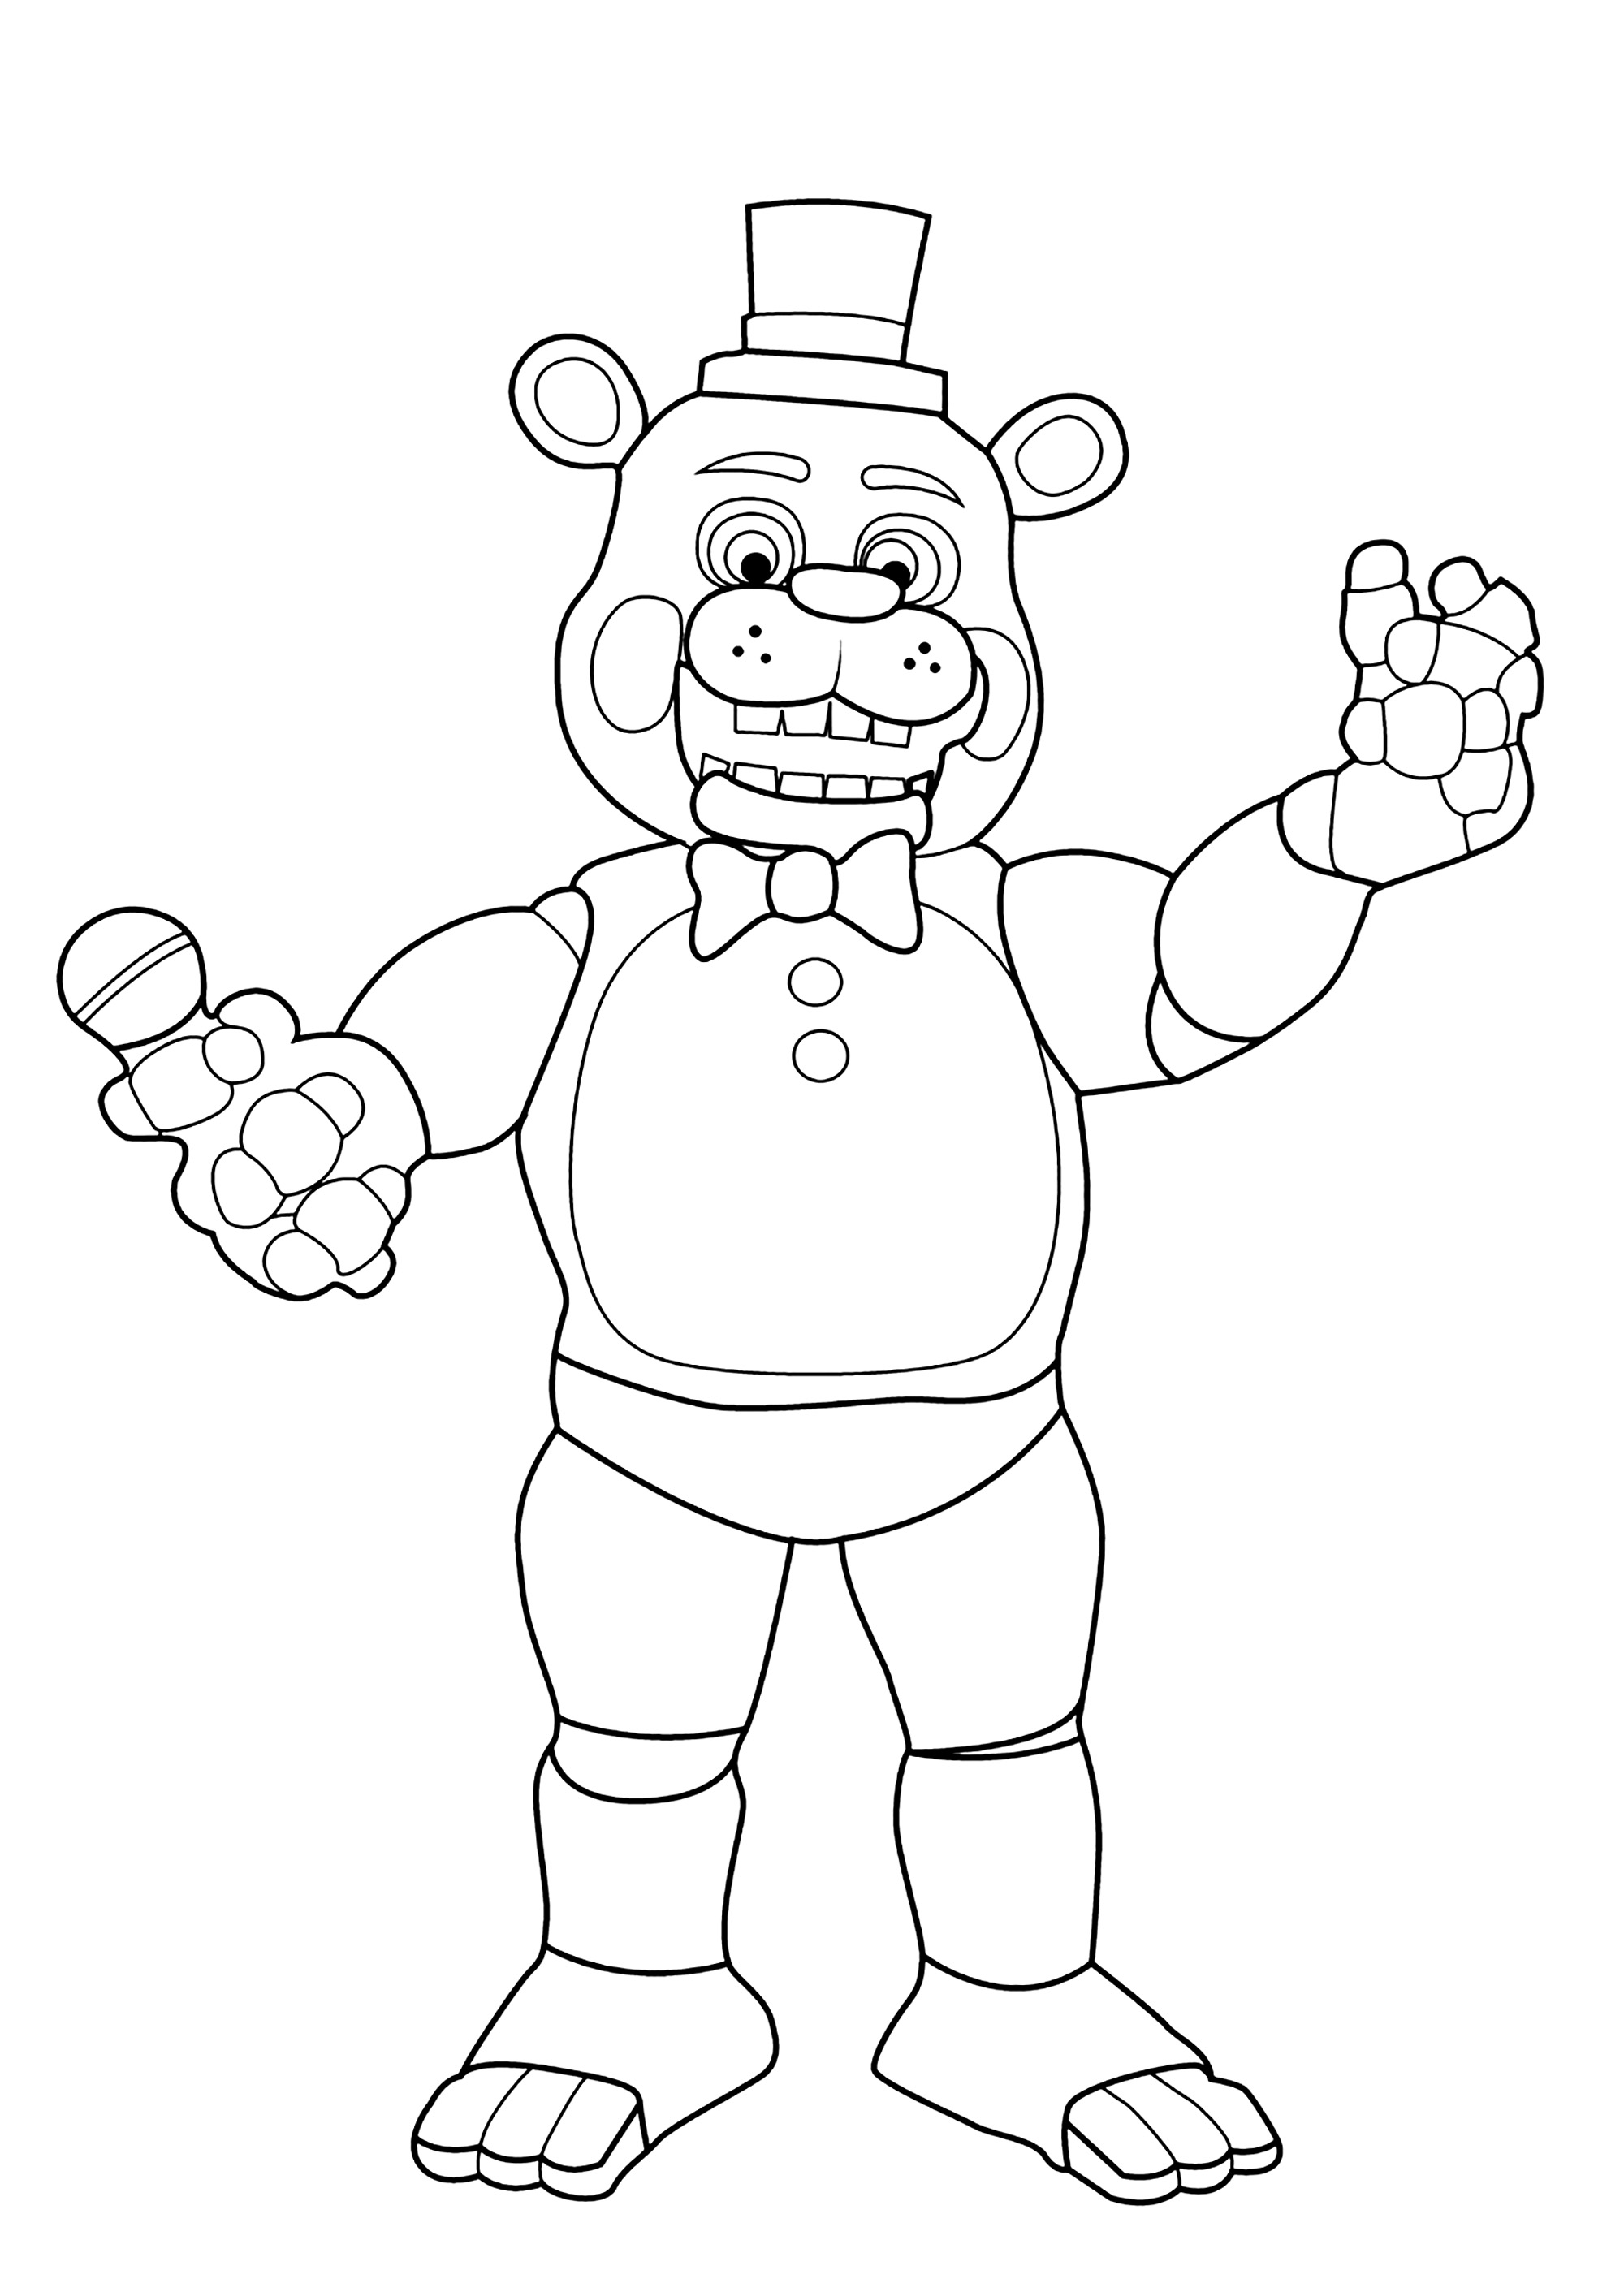 Freddy Fazbear: o urso animatrónico. O Freddy é um urso animatrónico e a mascote da piza Freddy Fazbear original.